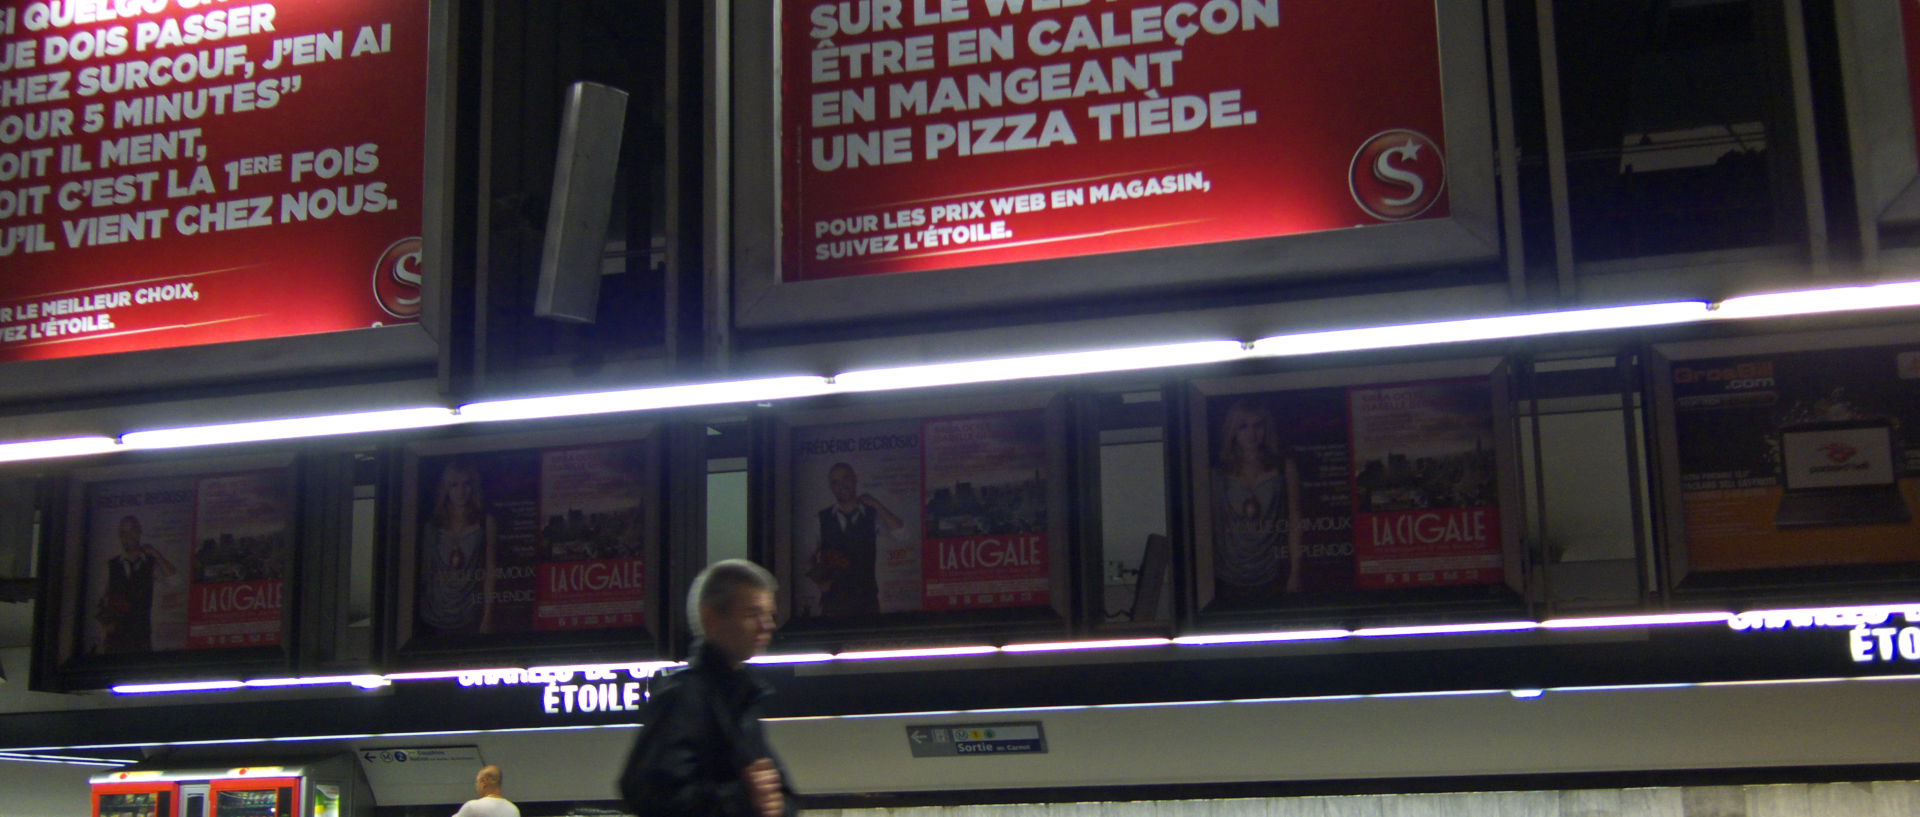 Photo dans le RER, station Charles-de-Gaulle, Paris.